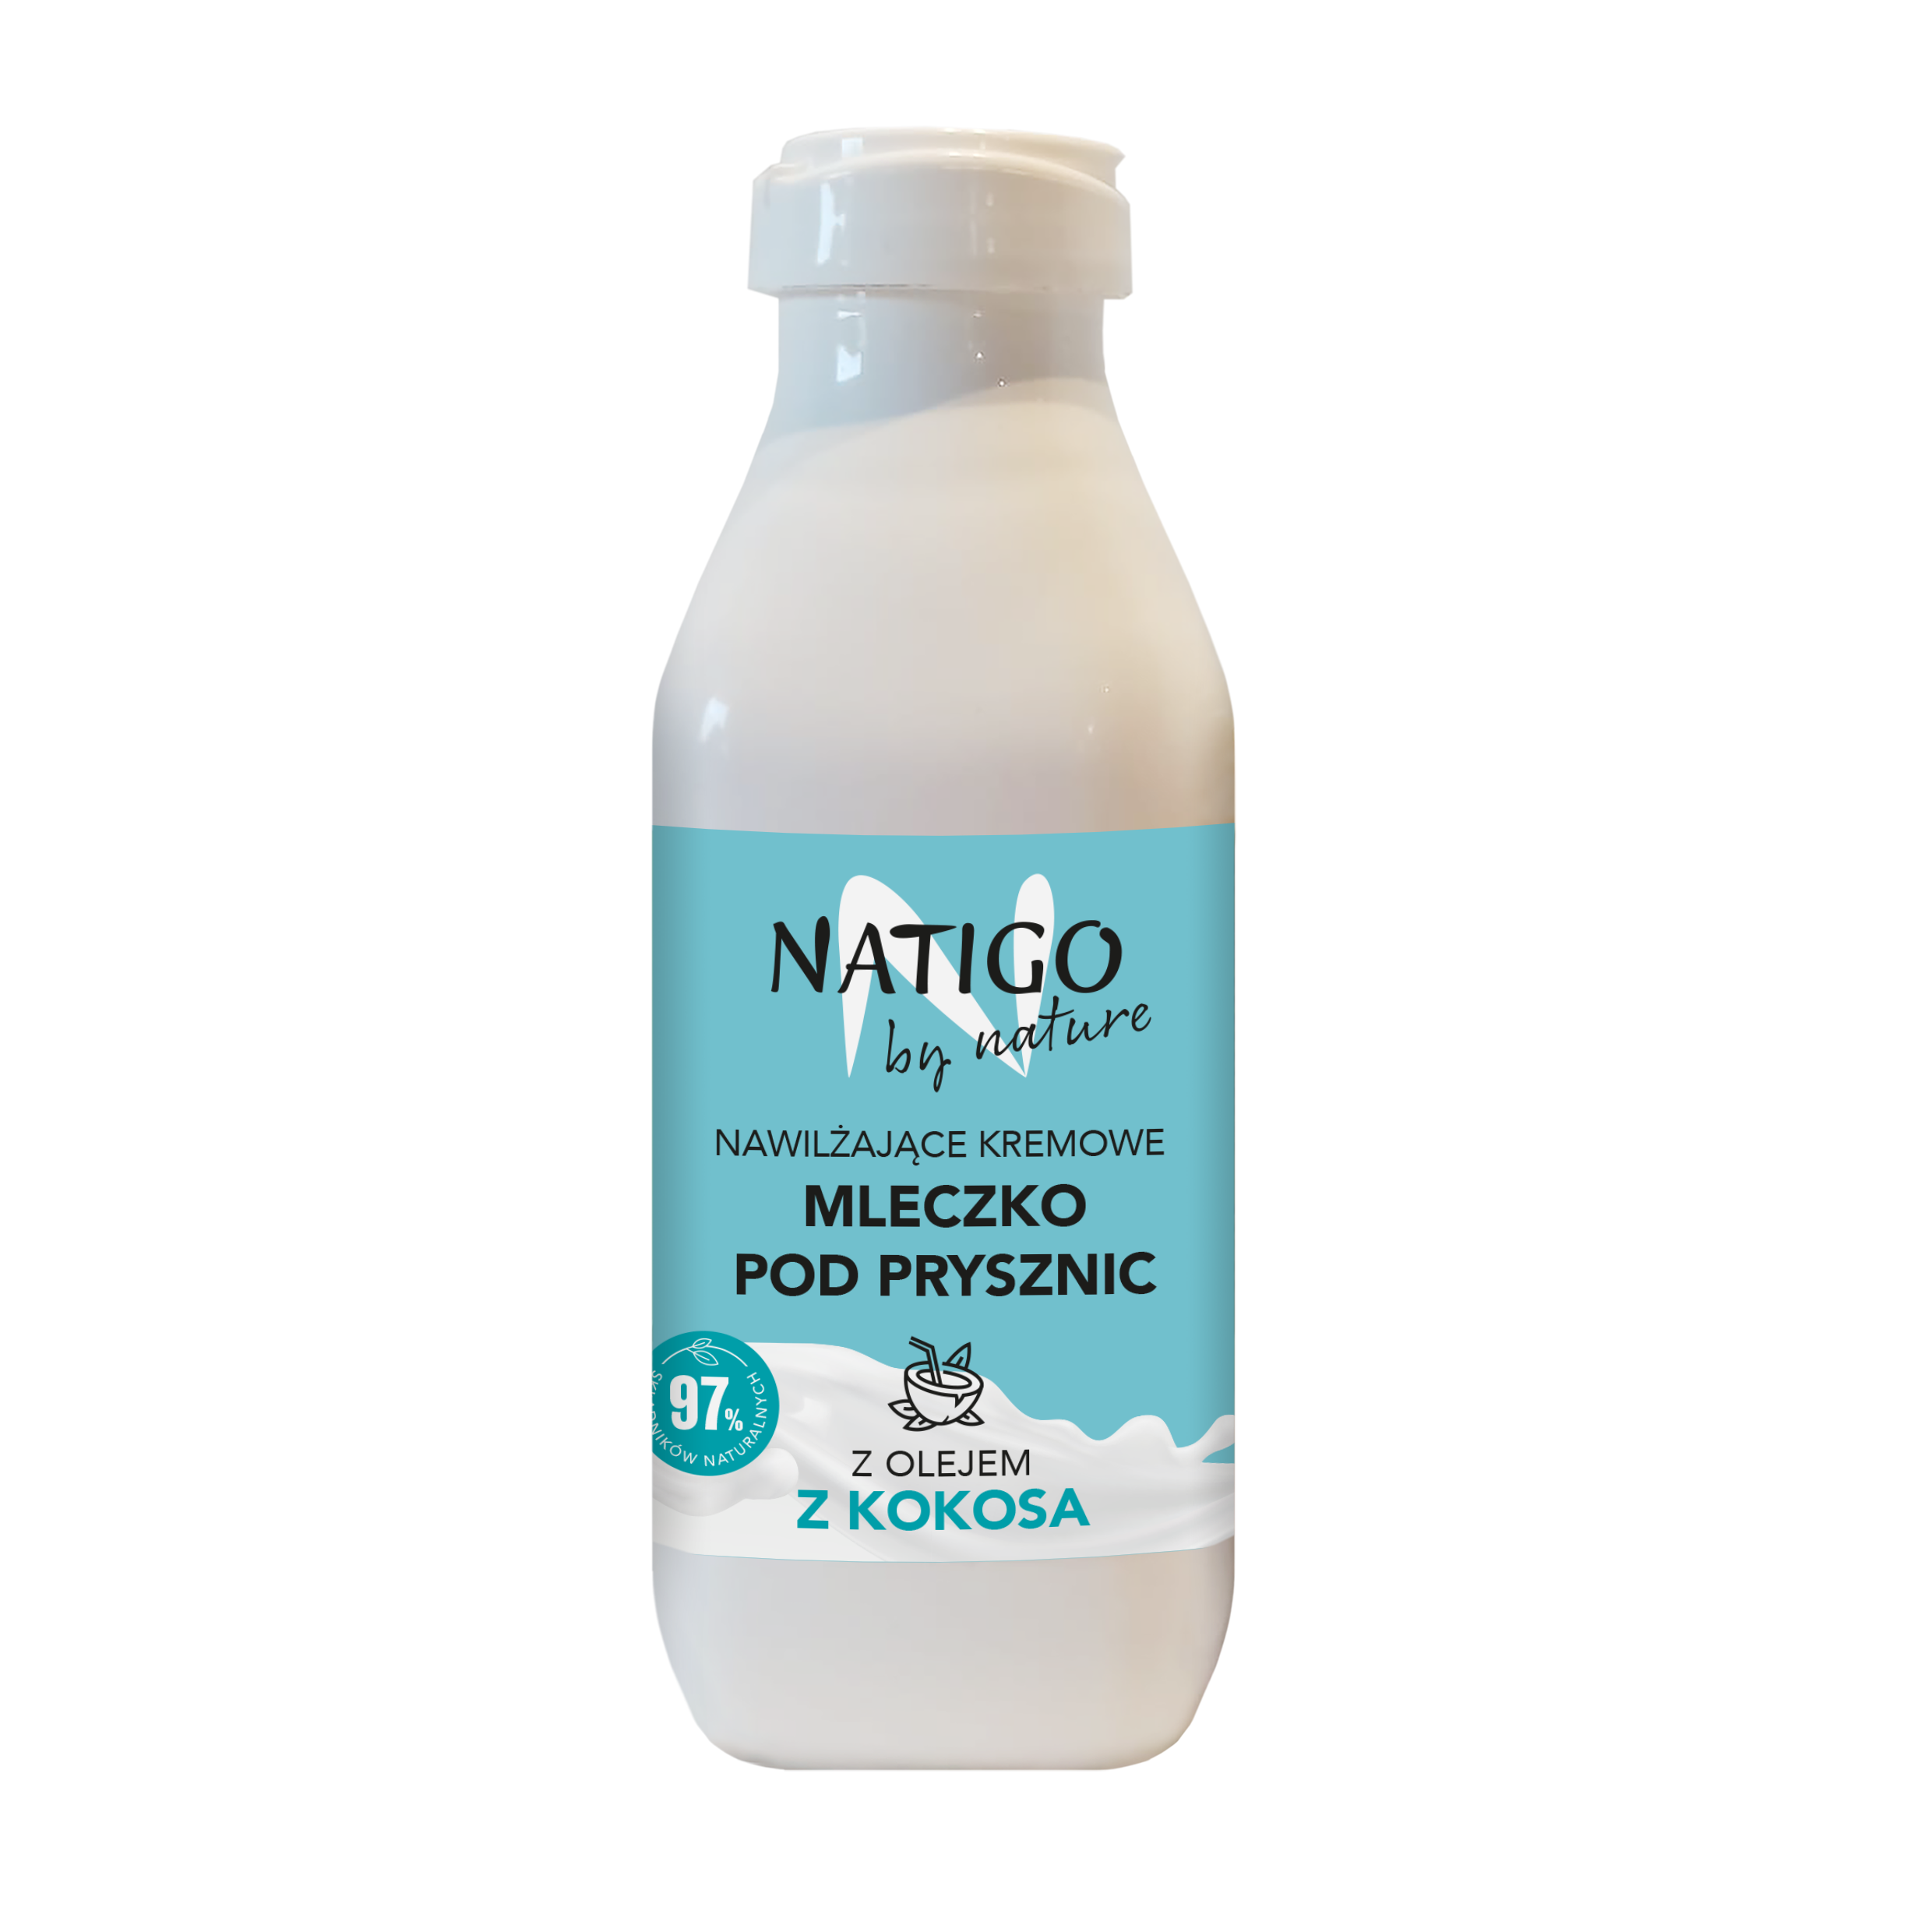 Увлажняющее сливочное молочко для душа с кокосовым маслом Natigo By Nature, 400 мл масло сливочное лебедяньмолоко крестьянское 72 5% 180 г